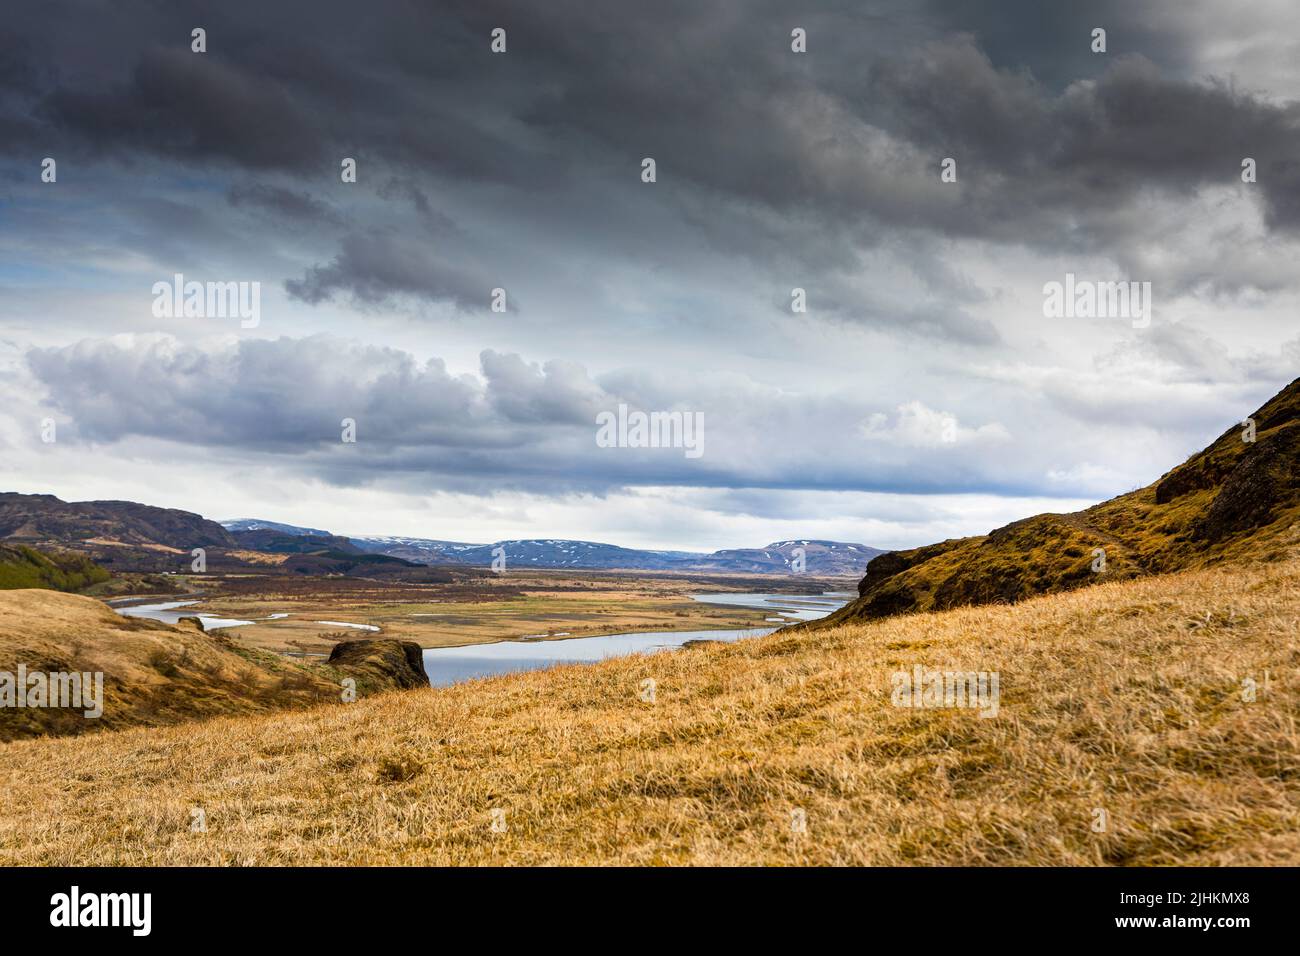 A landscape shot across Asolfsstadhir, Iceland Stock Photo